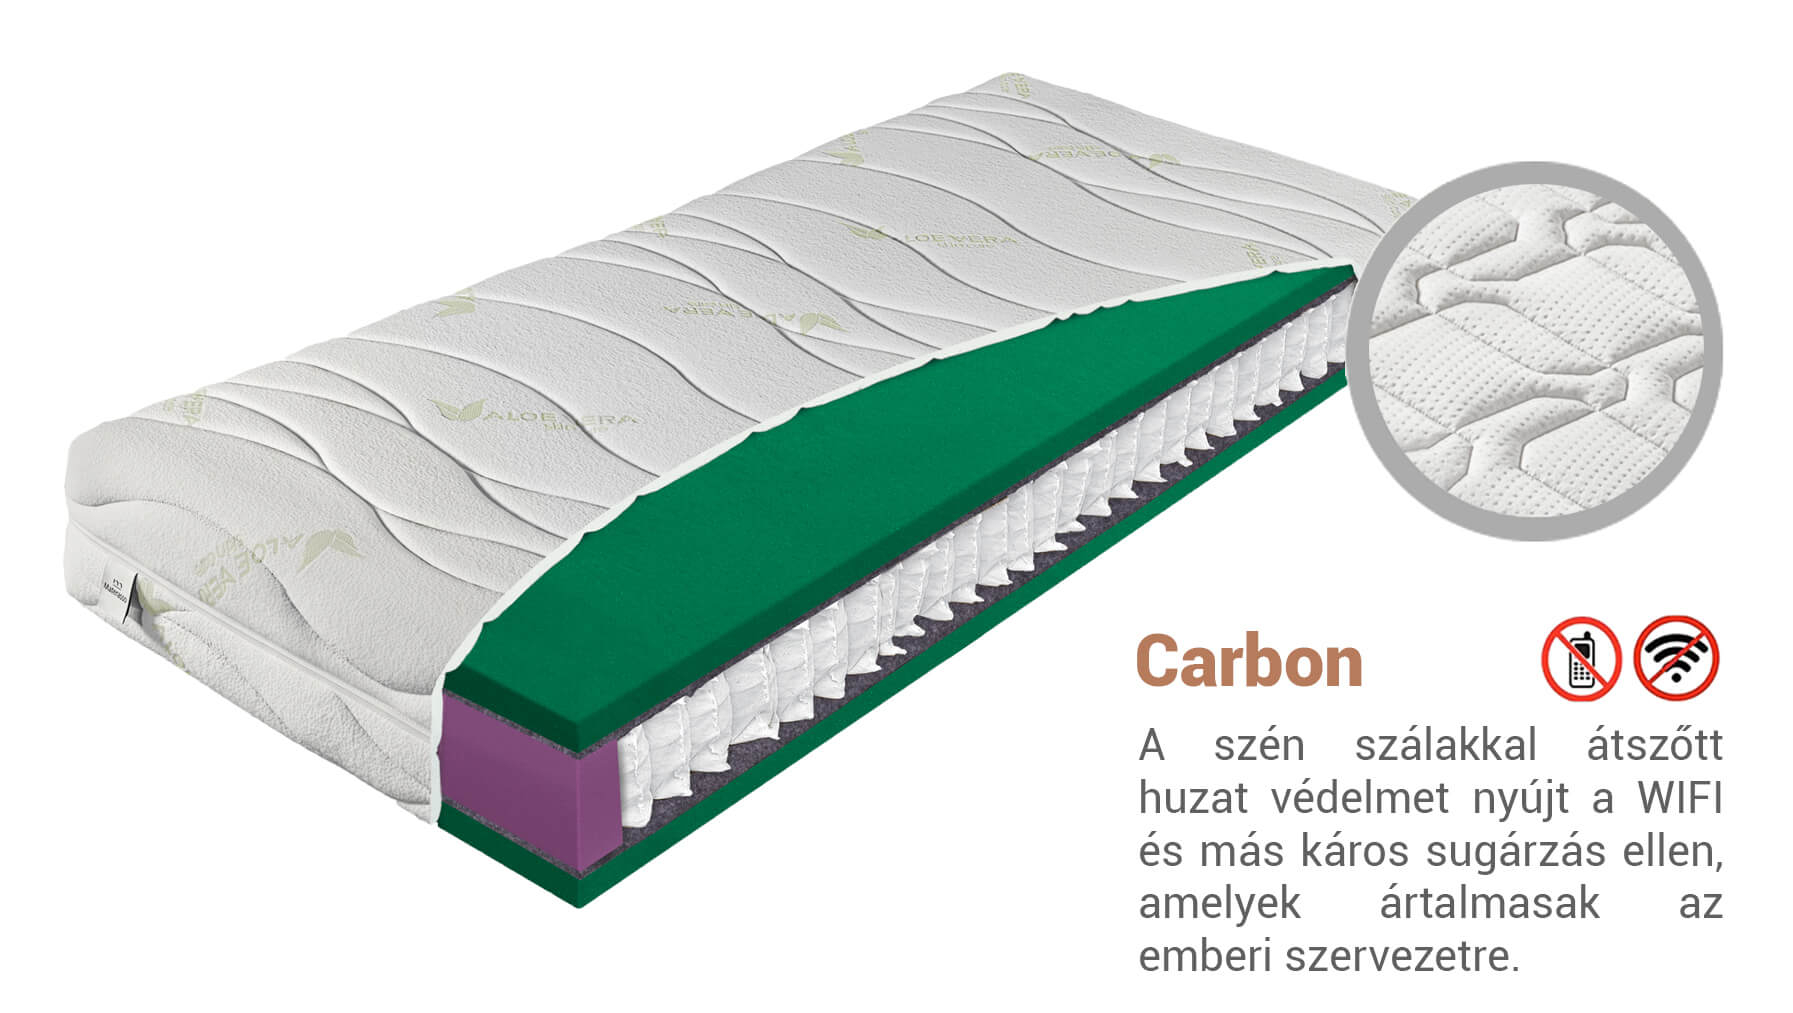 Materasso ZION AloeVera matrac 120x200 cm Huzat: Carbon (felár ellenében)